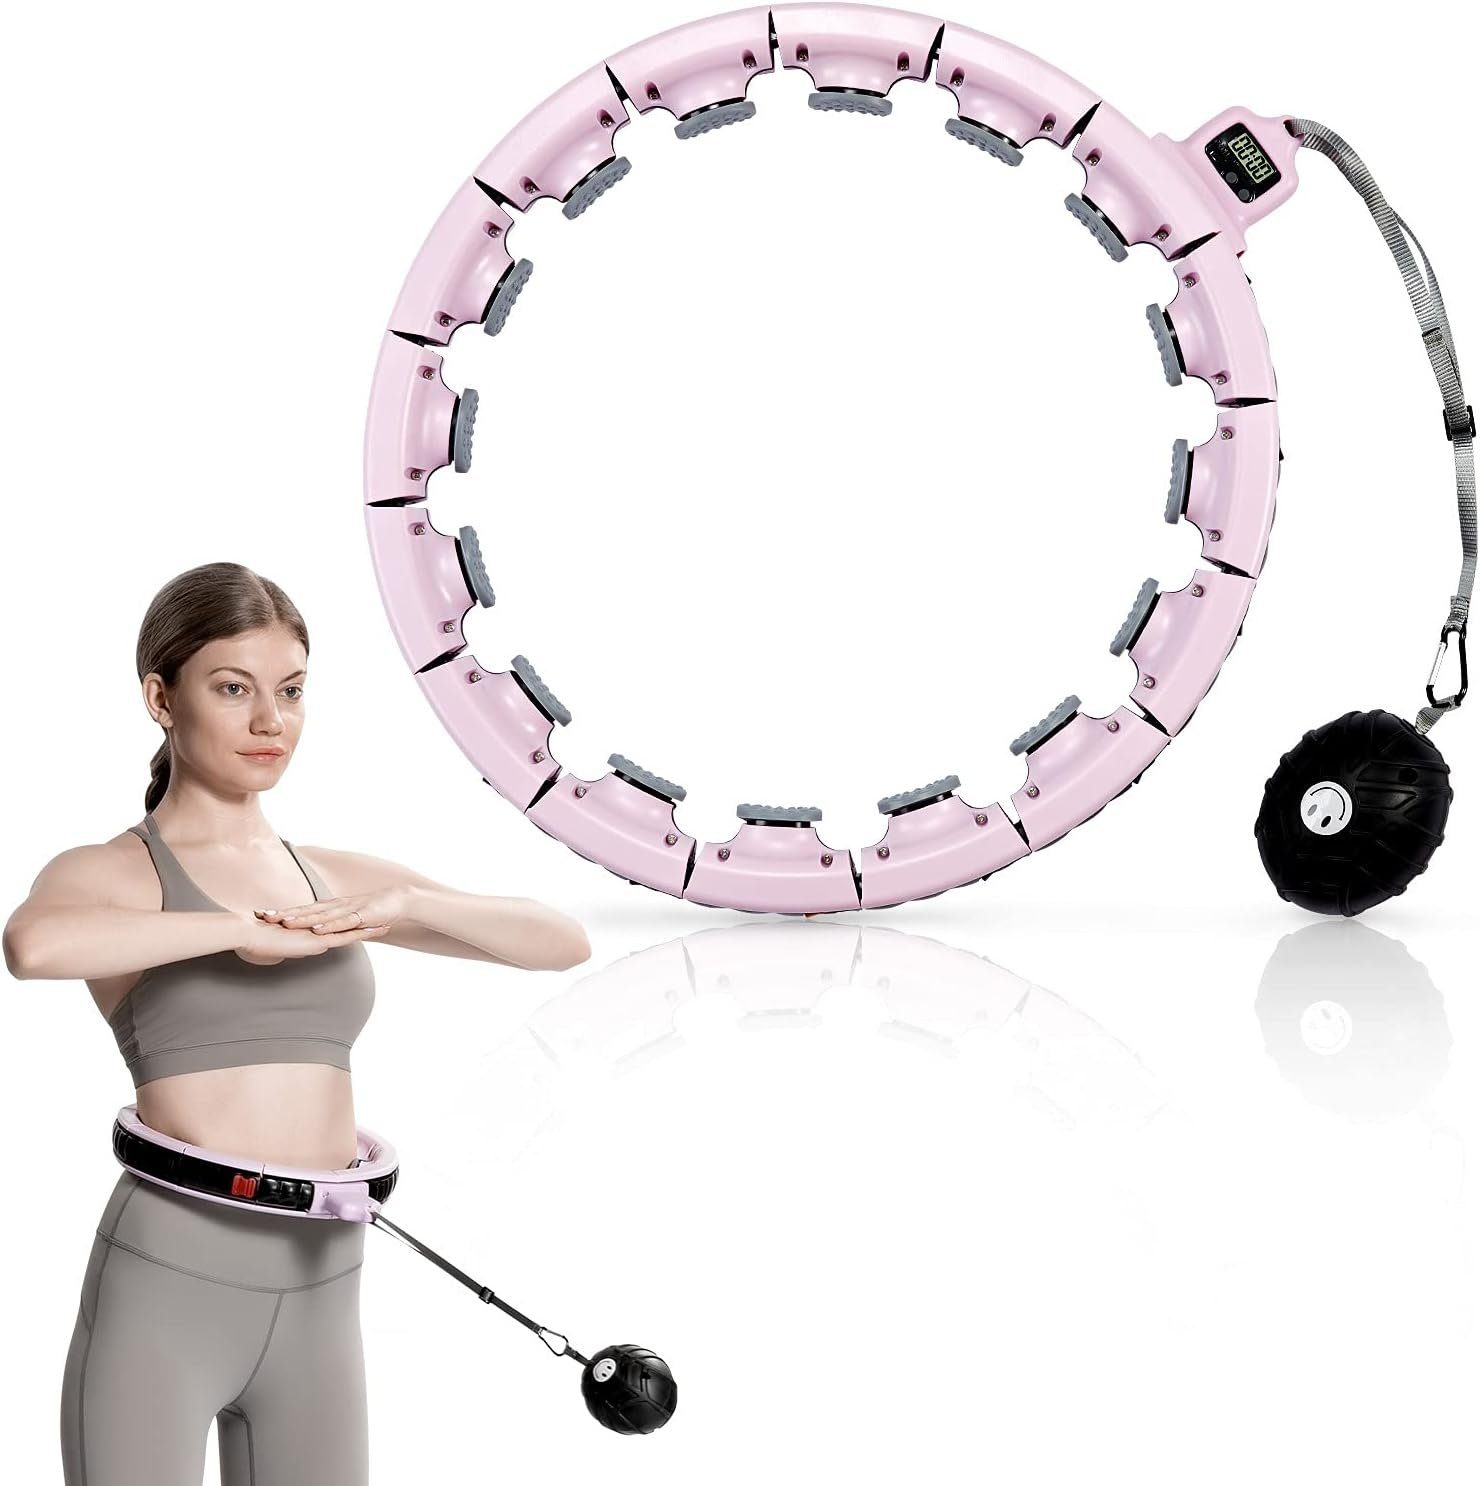 keystar Hula-Hoop-Reifen mit intelligentem Digitalzähler und 16 abnehmbaren Teilen, (75cm bis 125cm Taillenumfang, Massagenoppen für entspannendes Hula Hoop Erlebnis, Perfekt für effektiven Gewichtsverlust und Spaß beim Training) Rosa